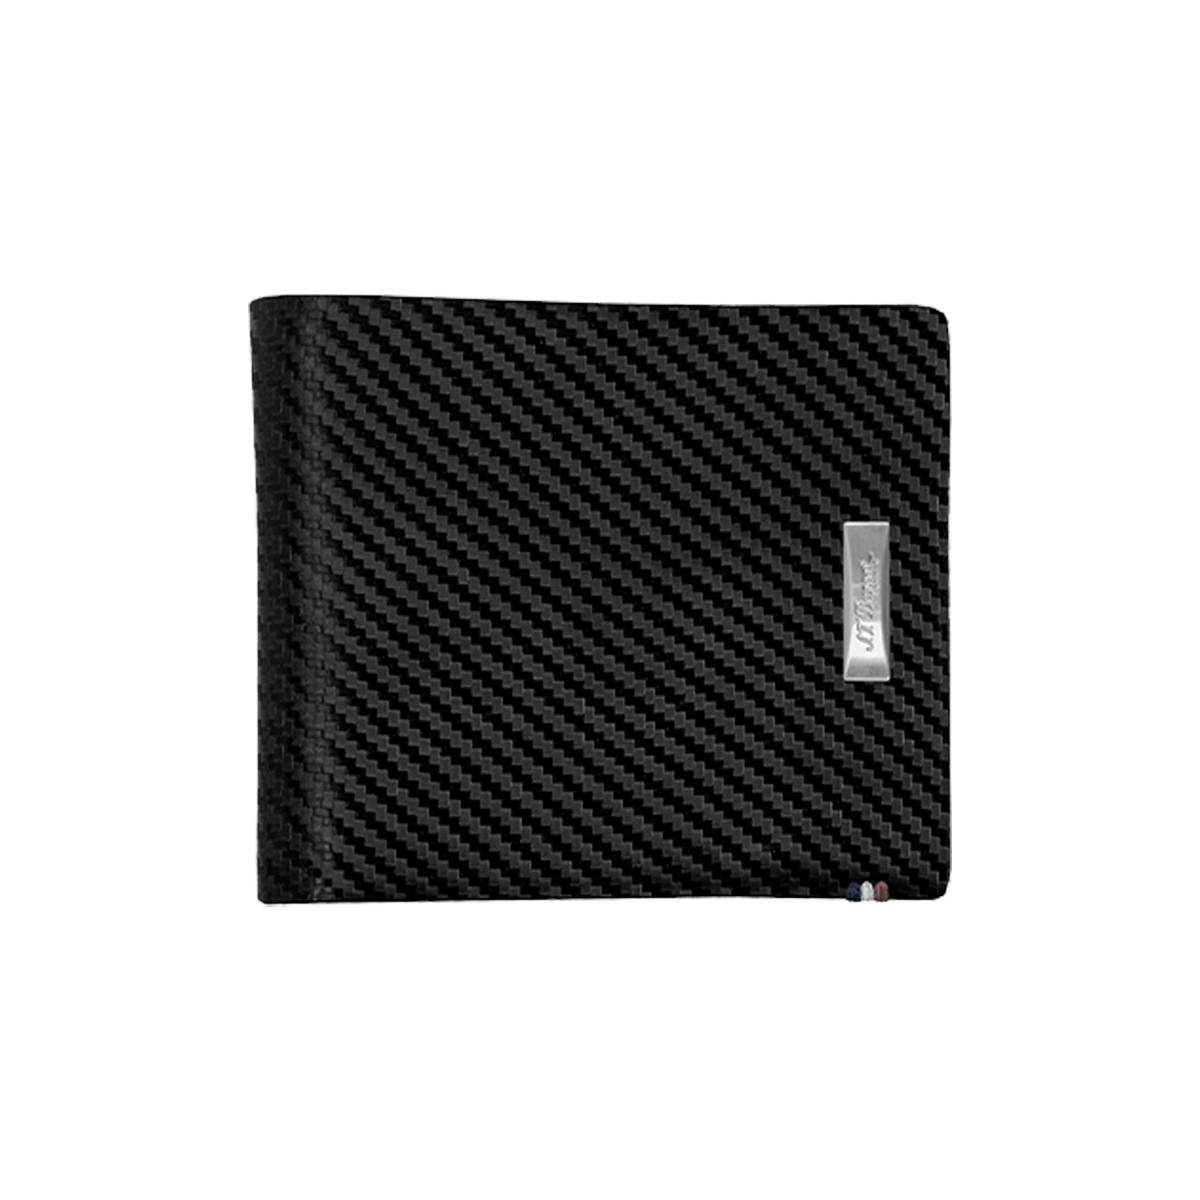 Портмоне Defi 170005 Цвет Чёрный Кожа Carbone, шесть карманов для кредитных карт | S.T. Dupont